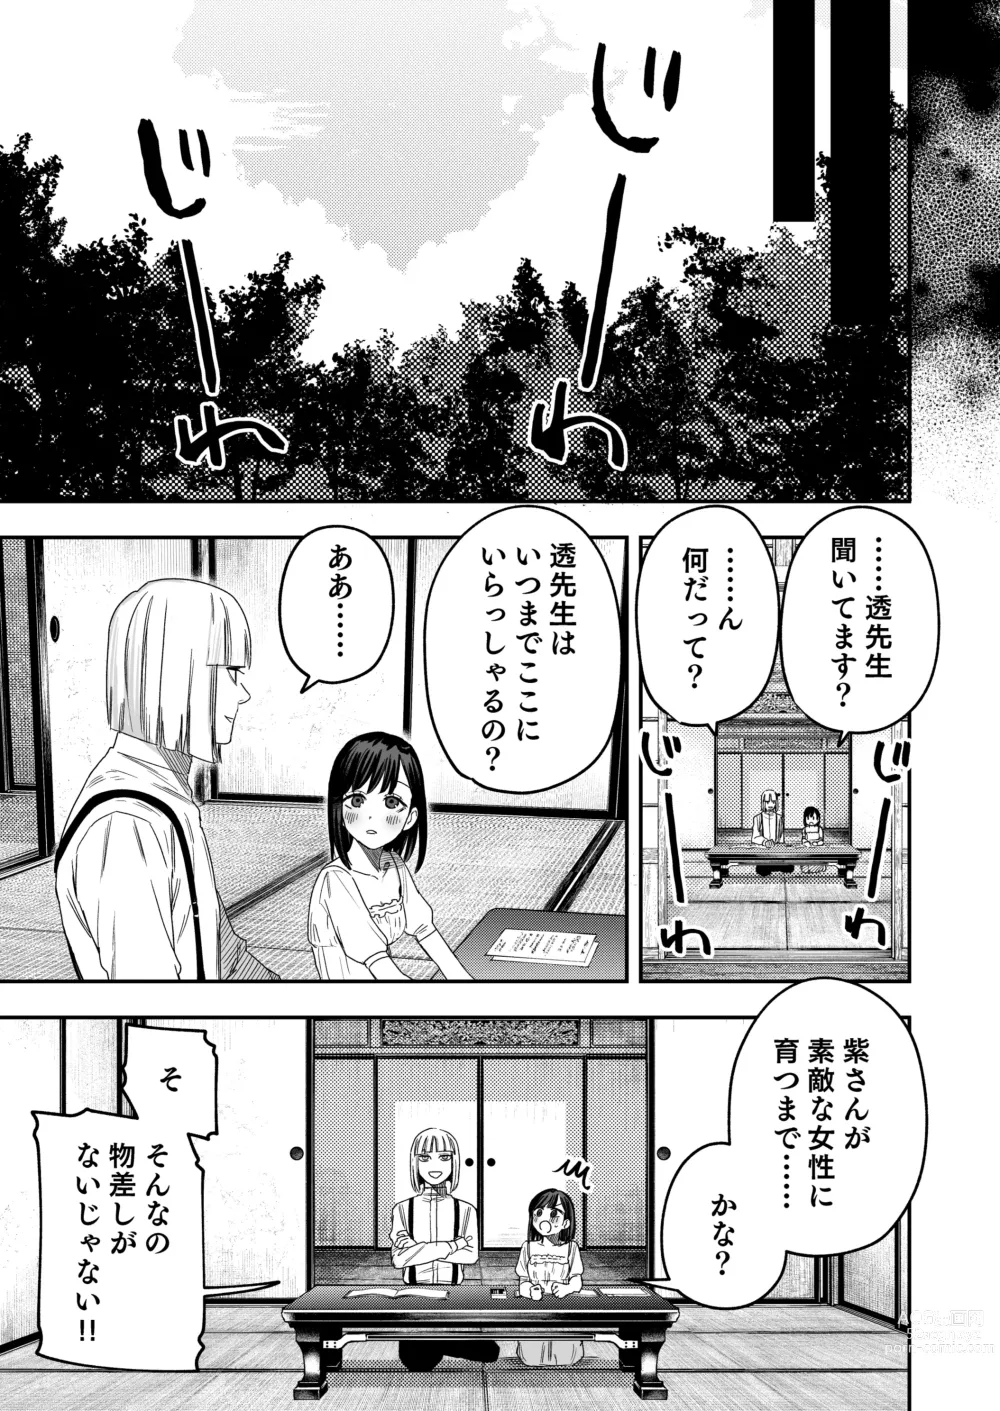 Page 46 of doujinshi Hachiroku Sou - Ieori to Hana Katajikena no Yome